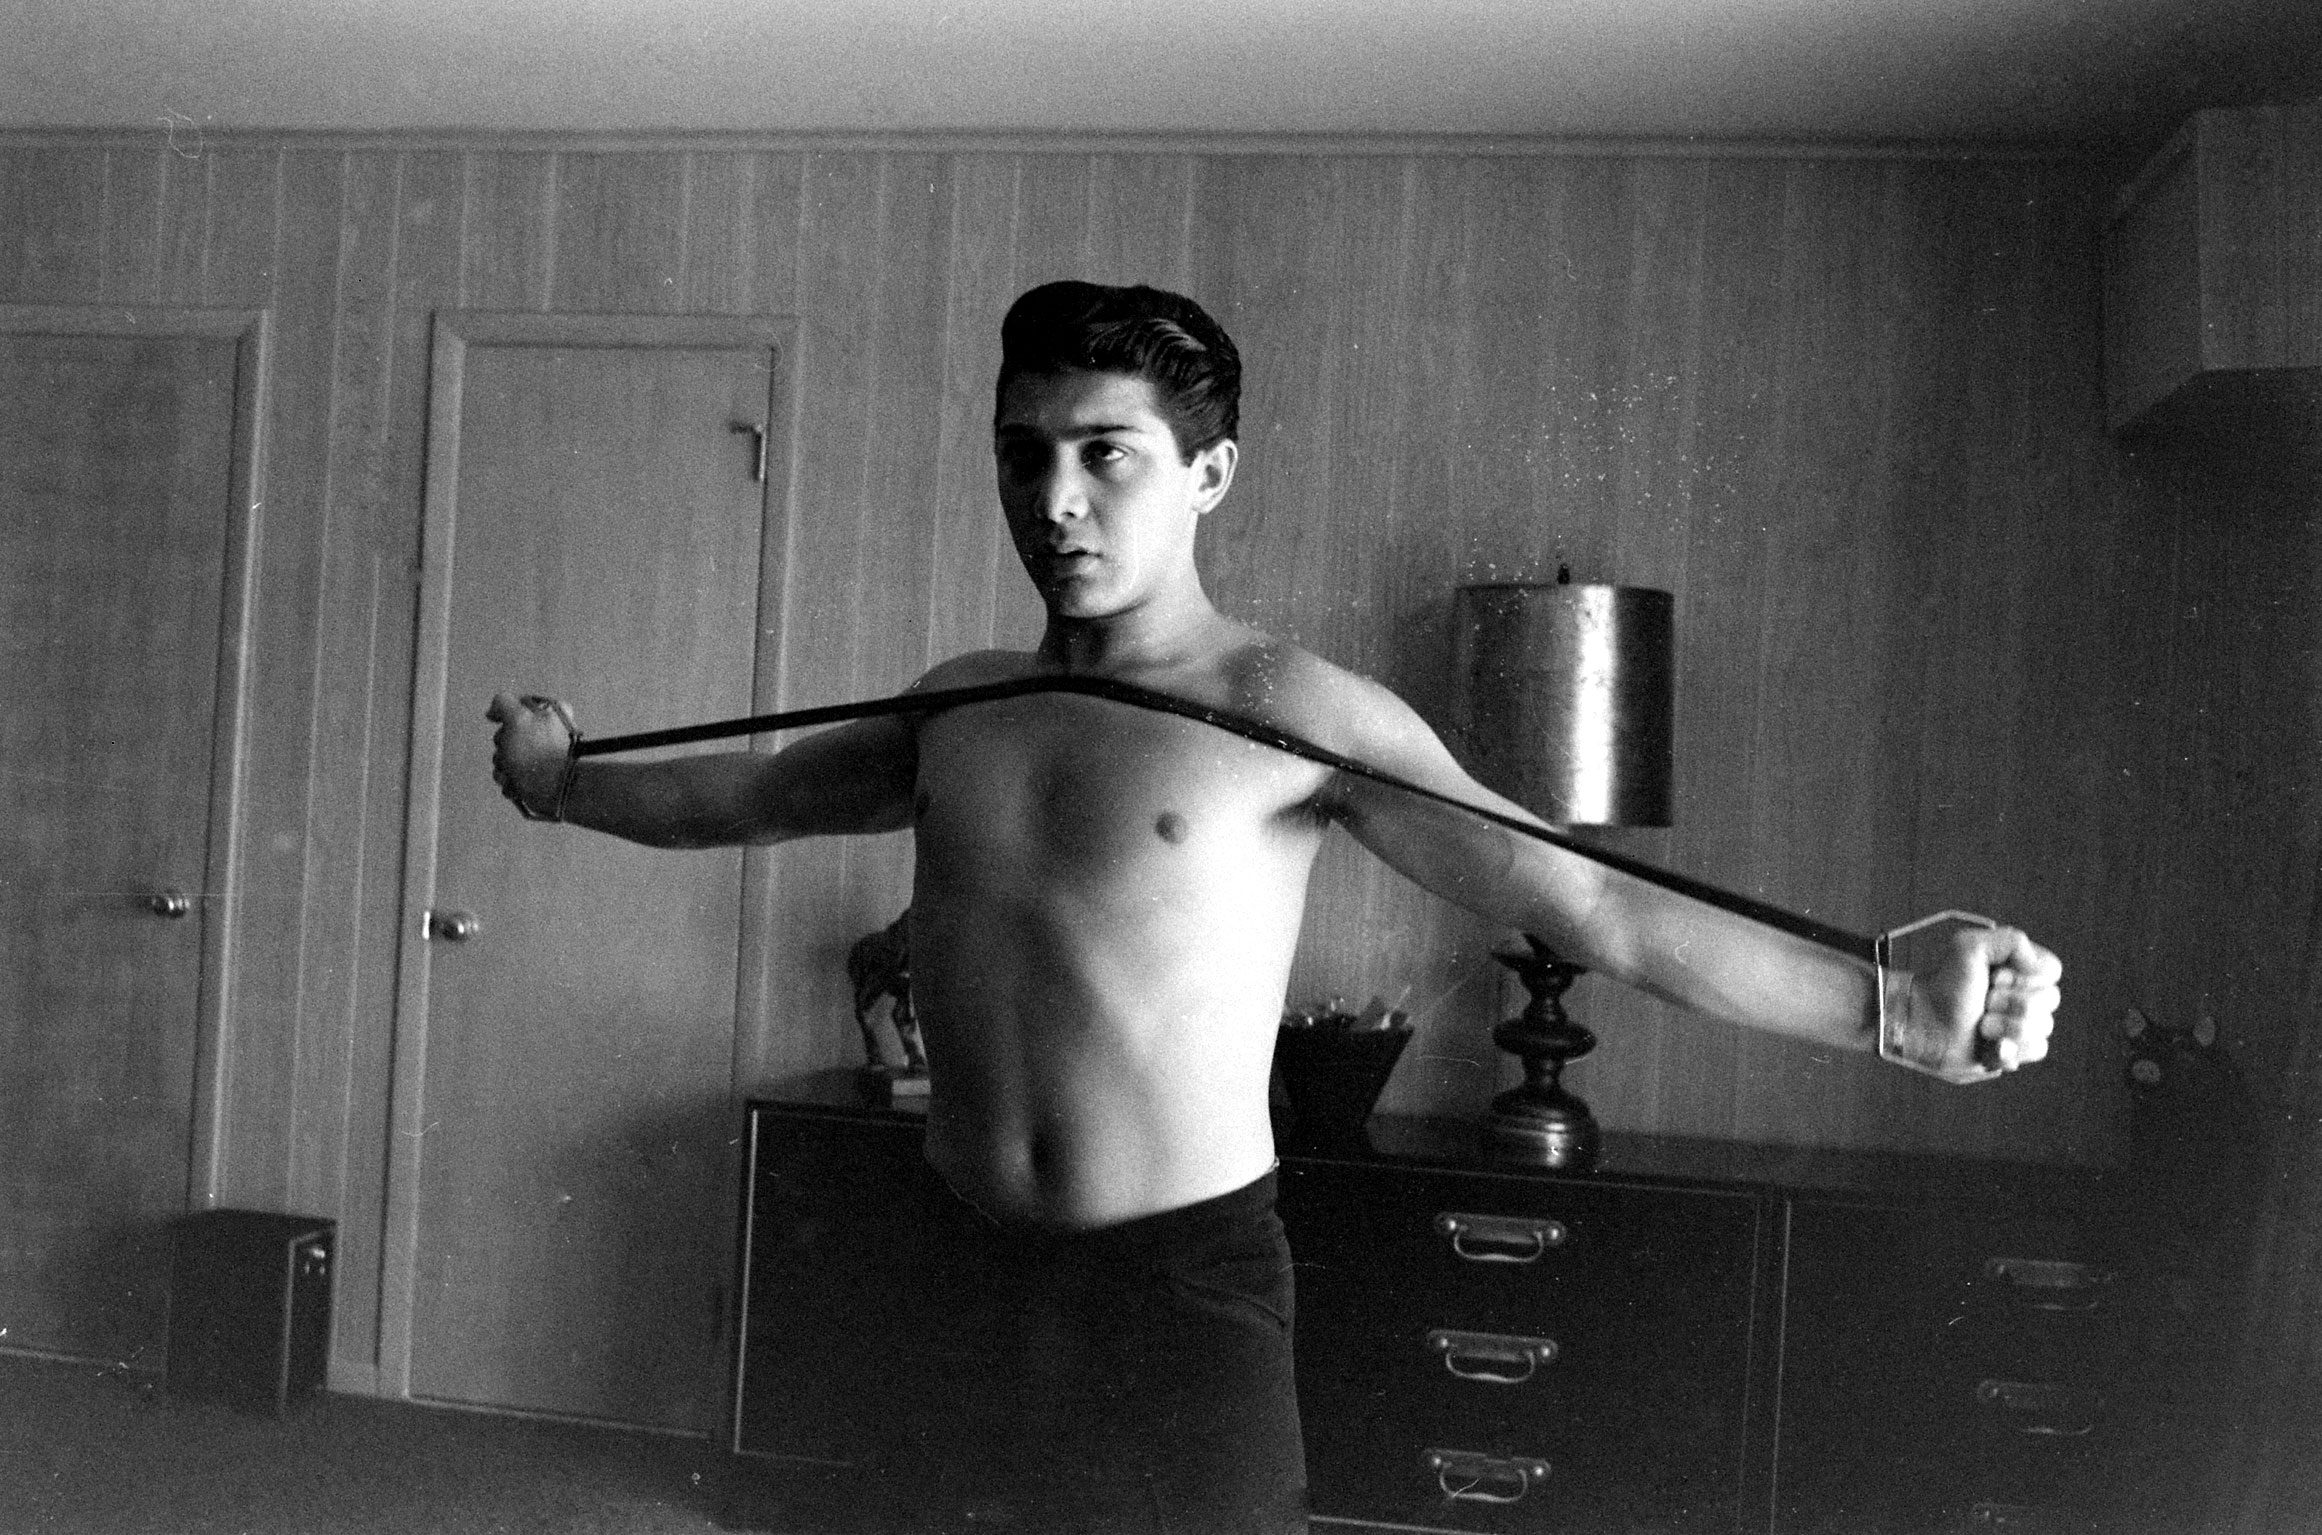 Paul Anka exercising at home, 1960.